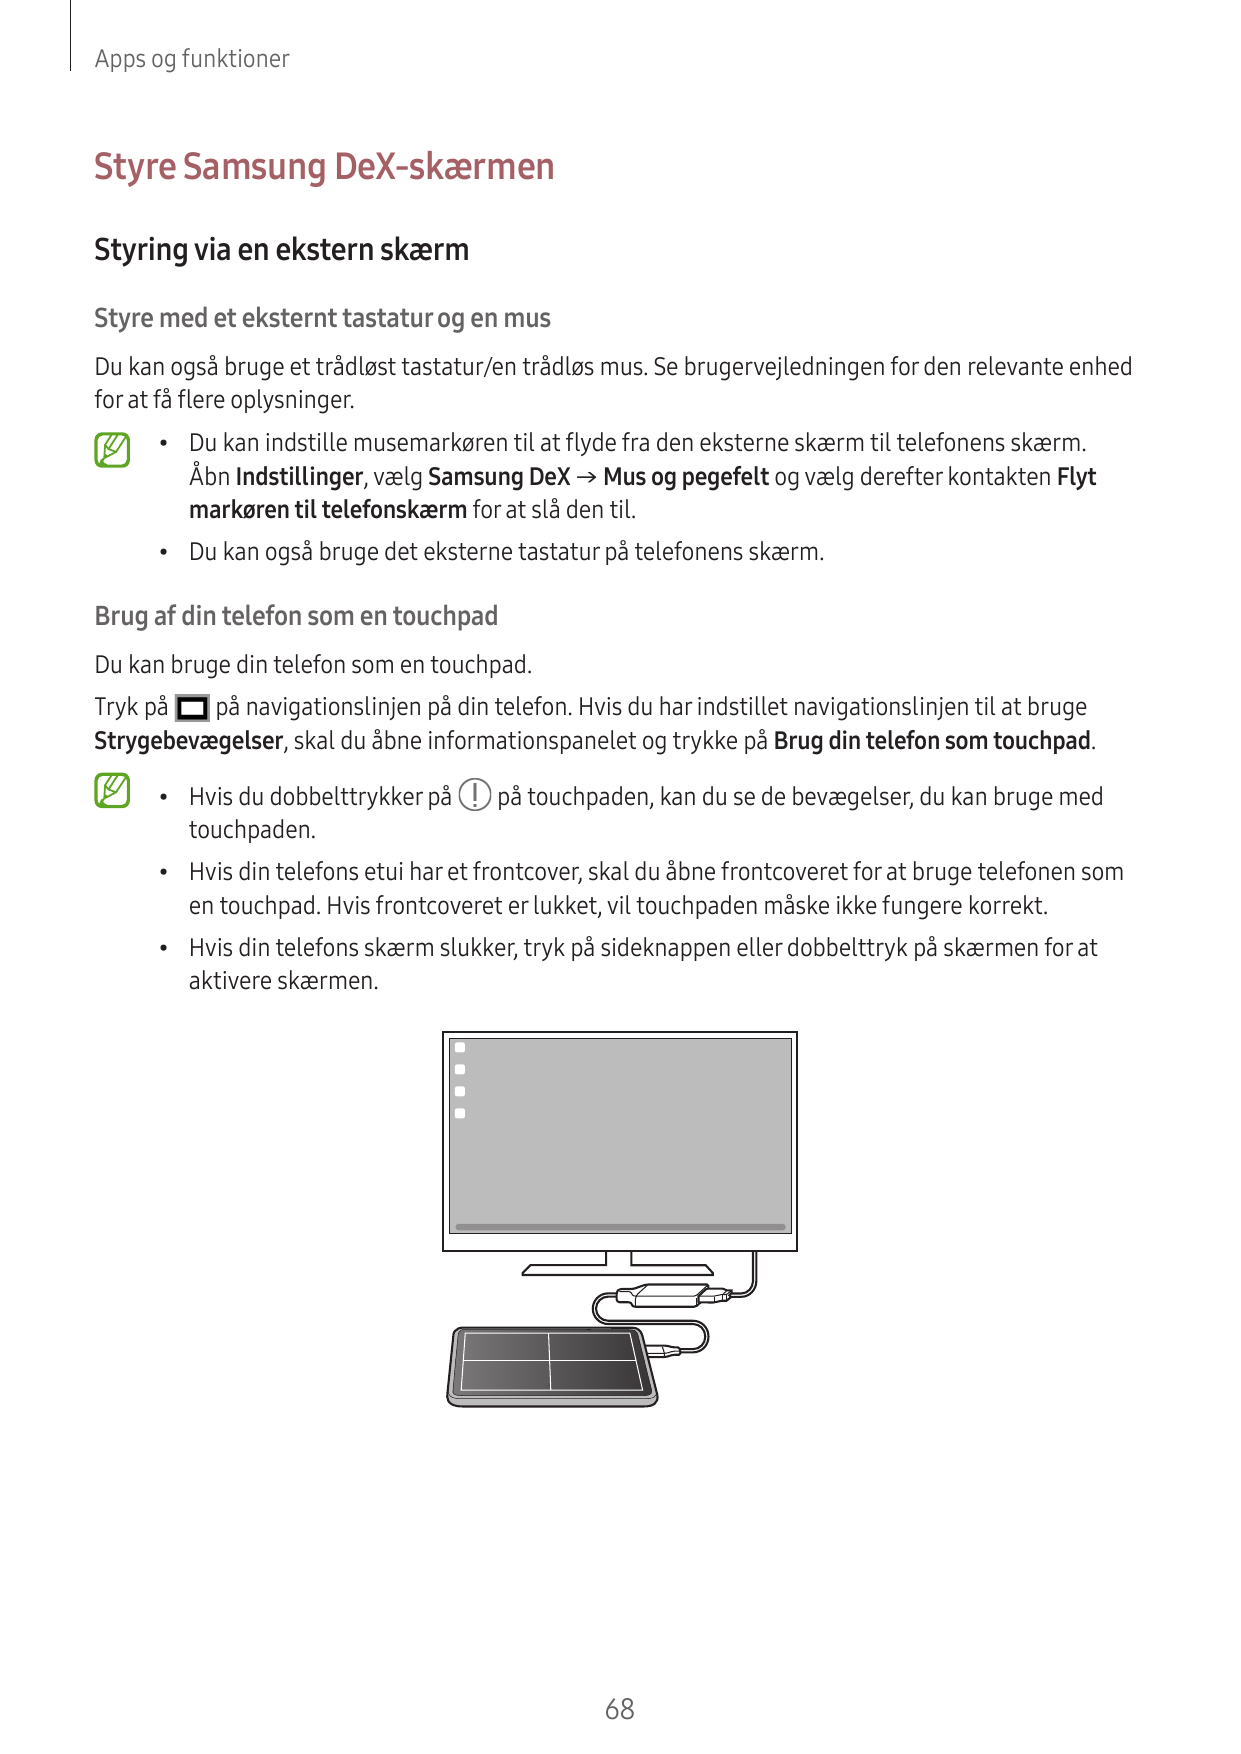 Apps og funktionerStyre Samsung DeX-skærmenStyring via en ekstern skærmStyre med et eksternt tastatur og en musDu kan også bruge